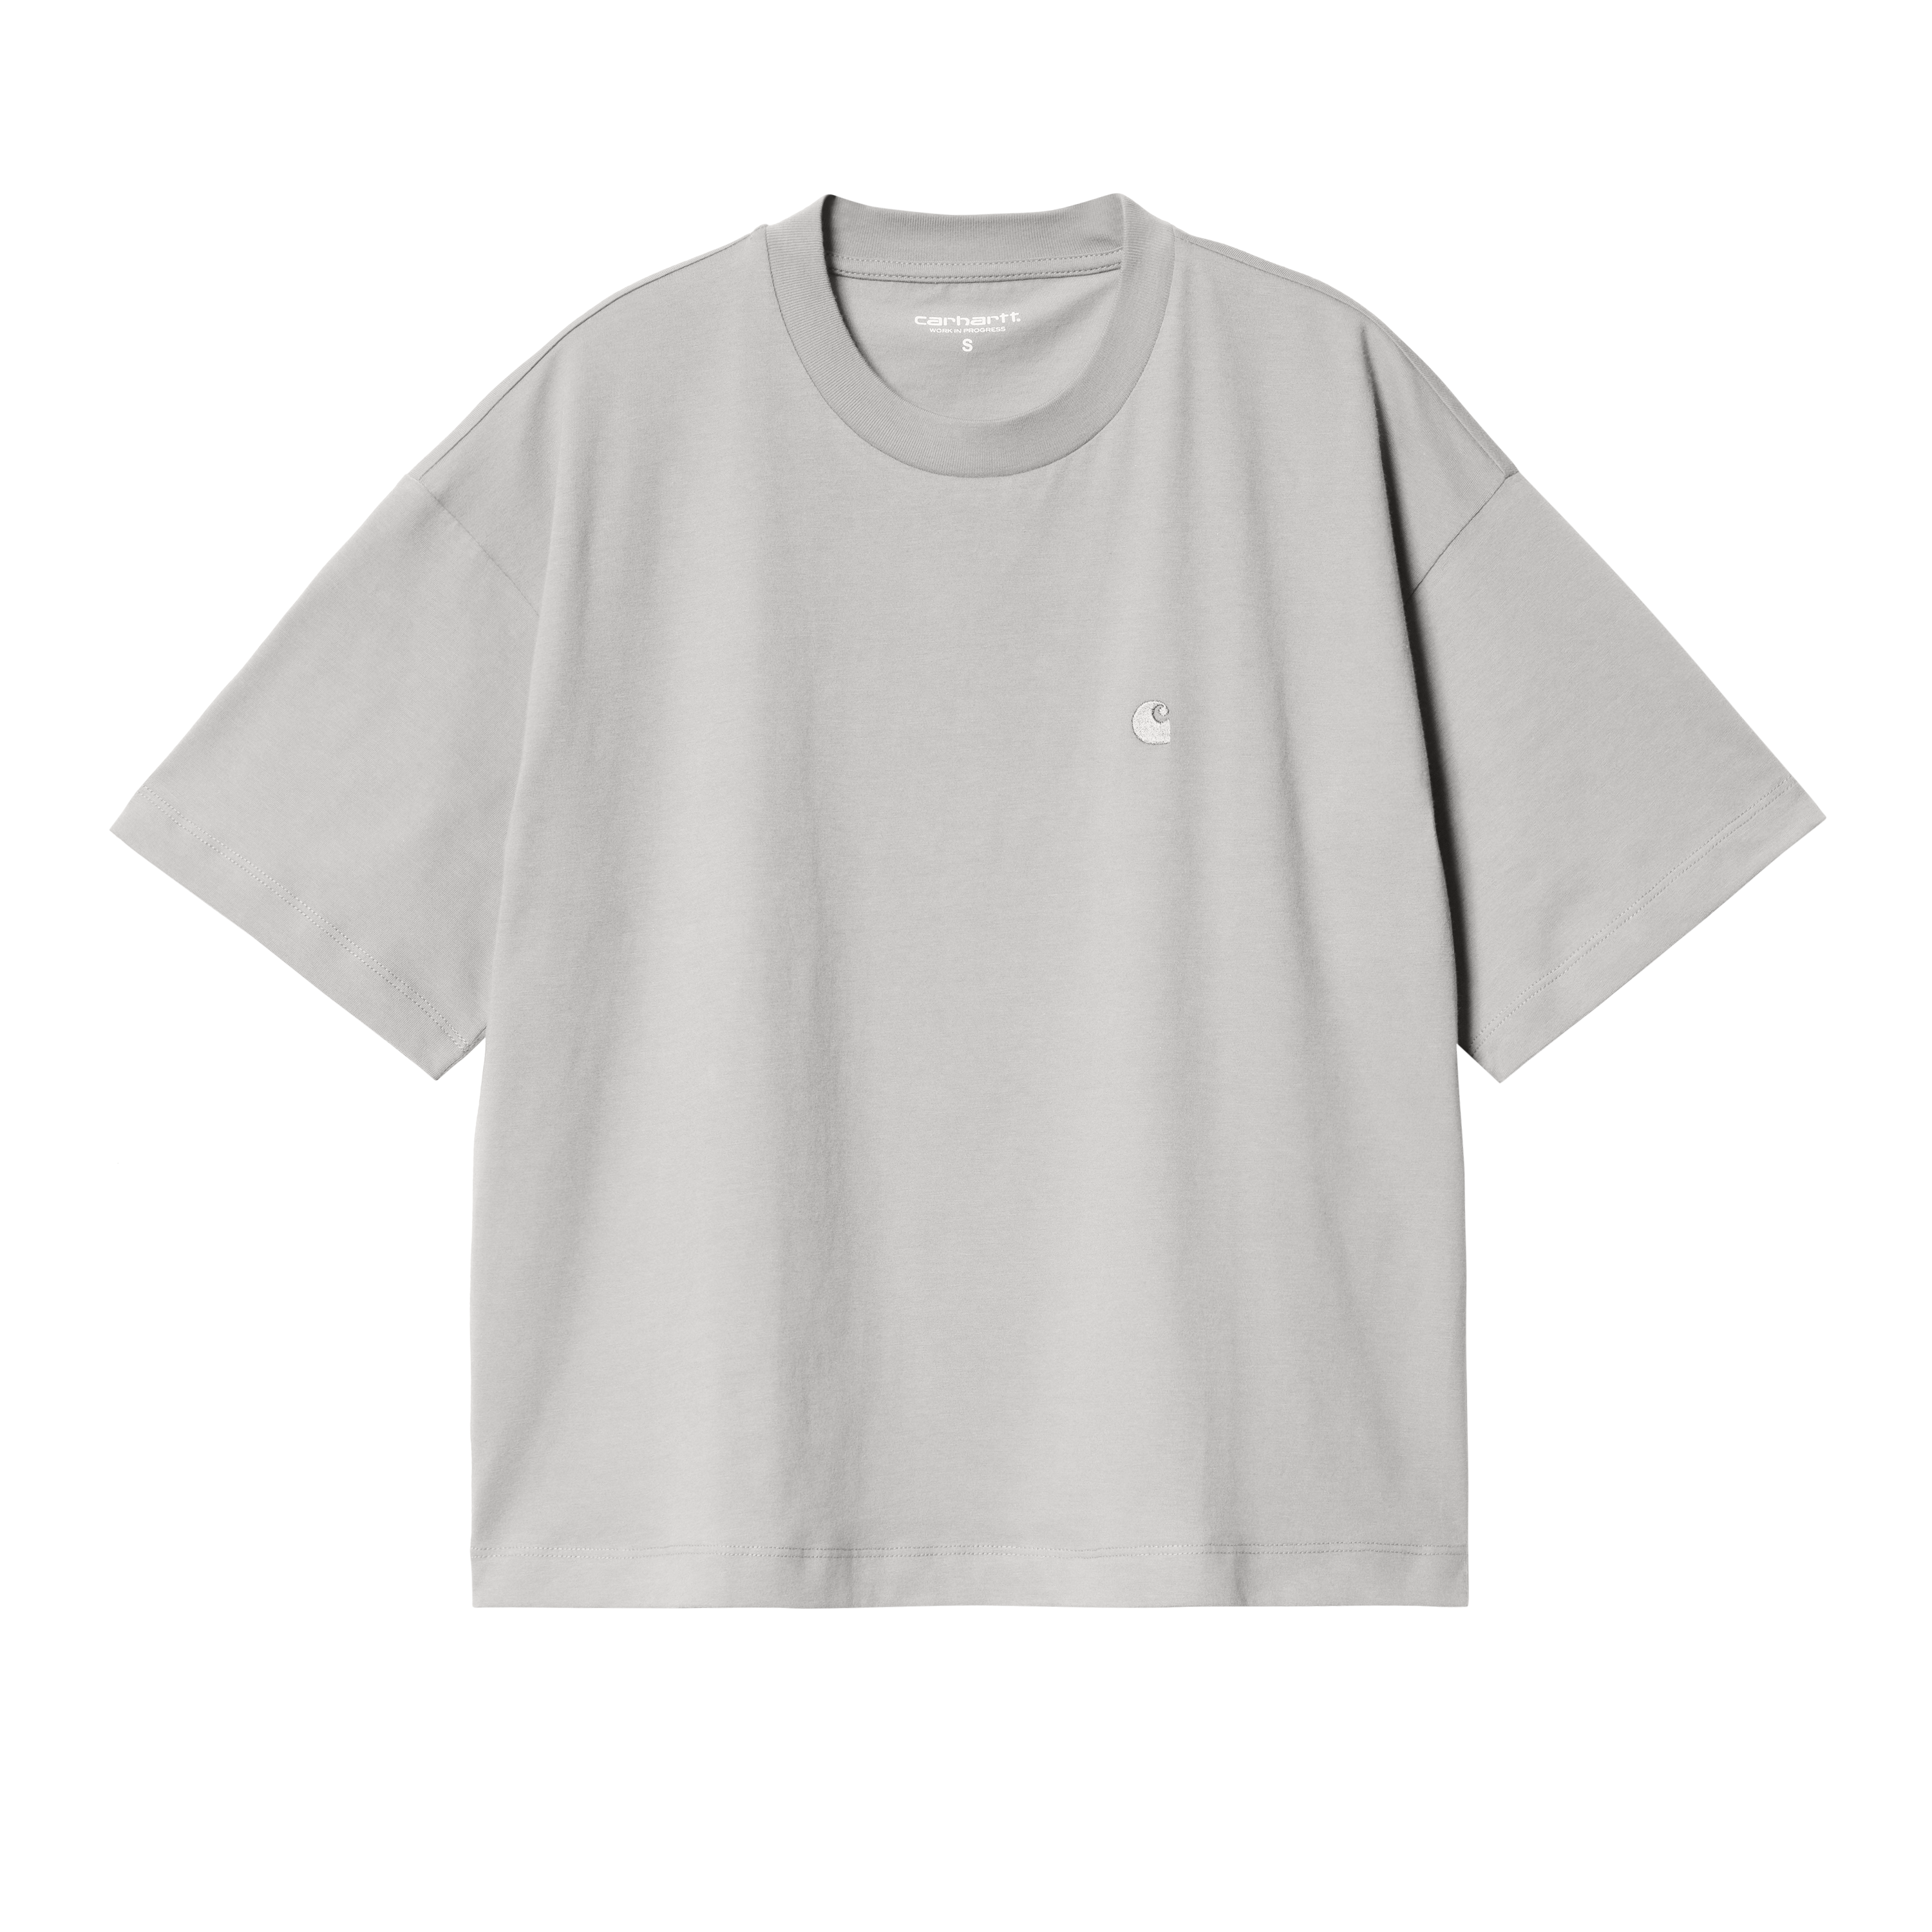 Carhartt WIP Women’s Short Sleeve Chester T-Shirt en Gris